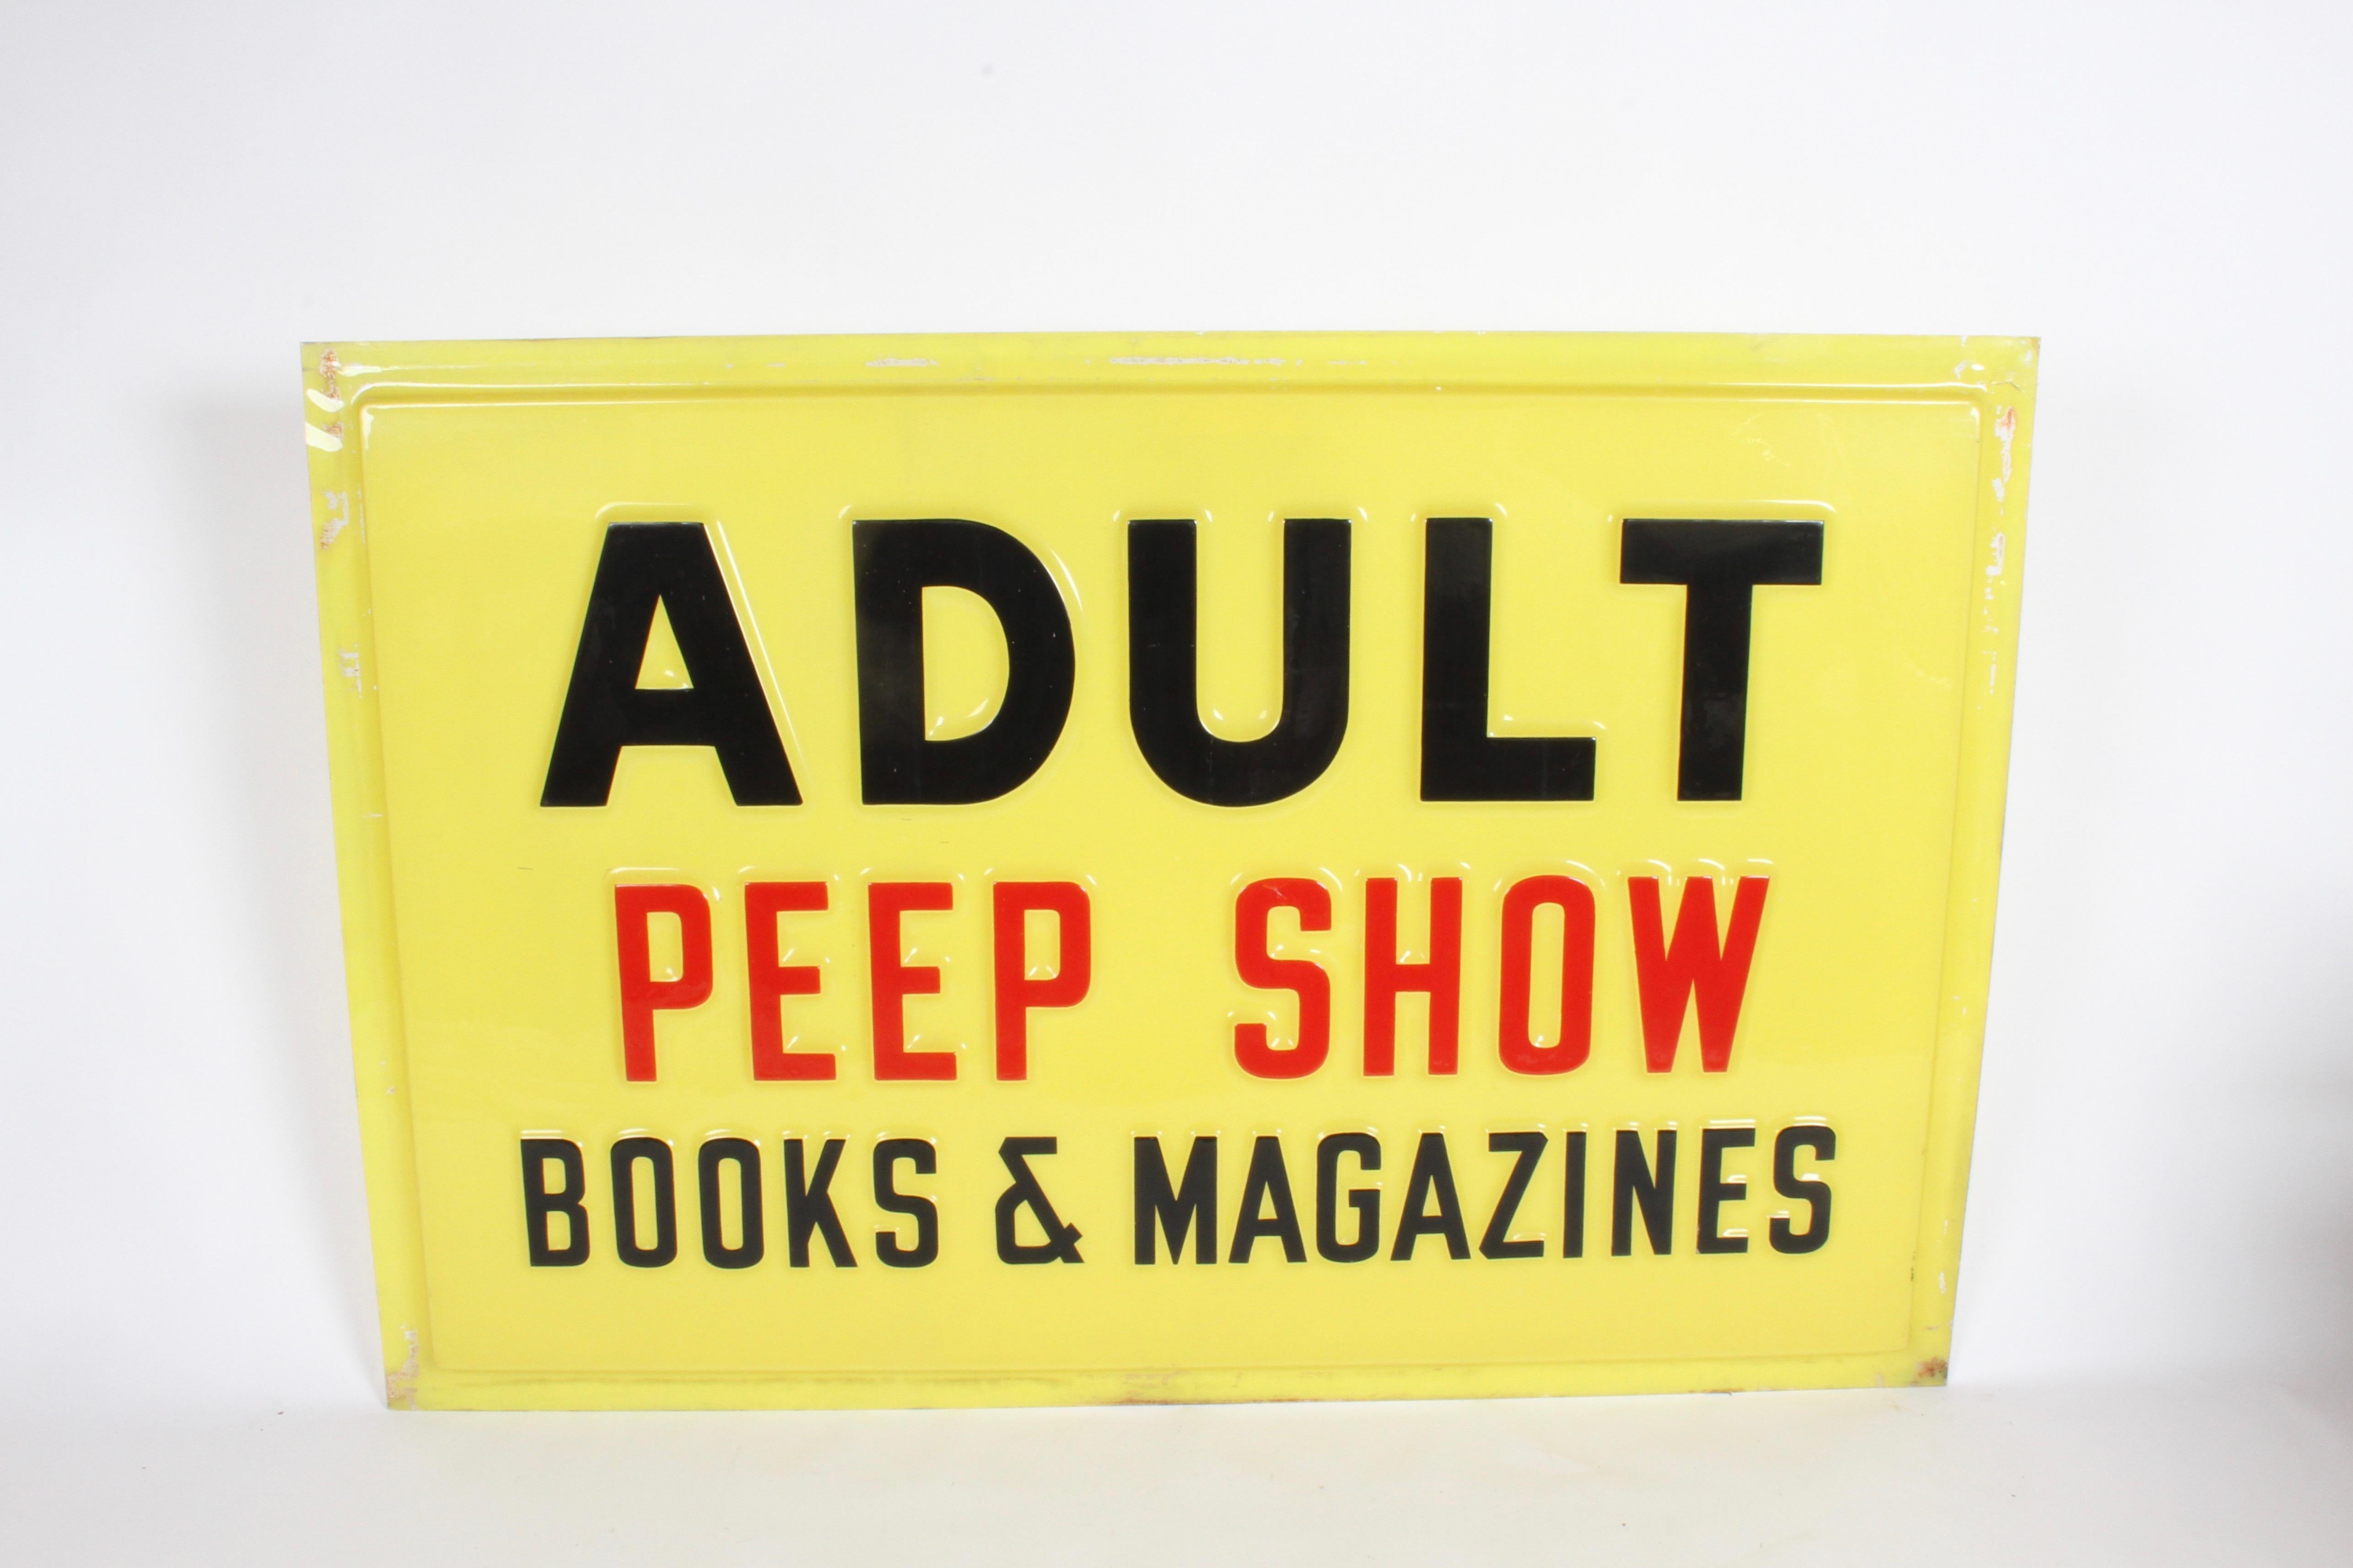 peep show magazine